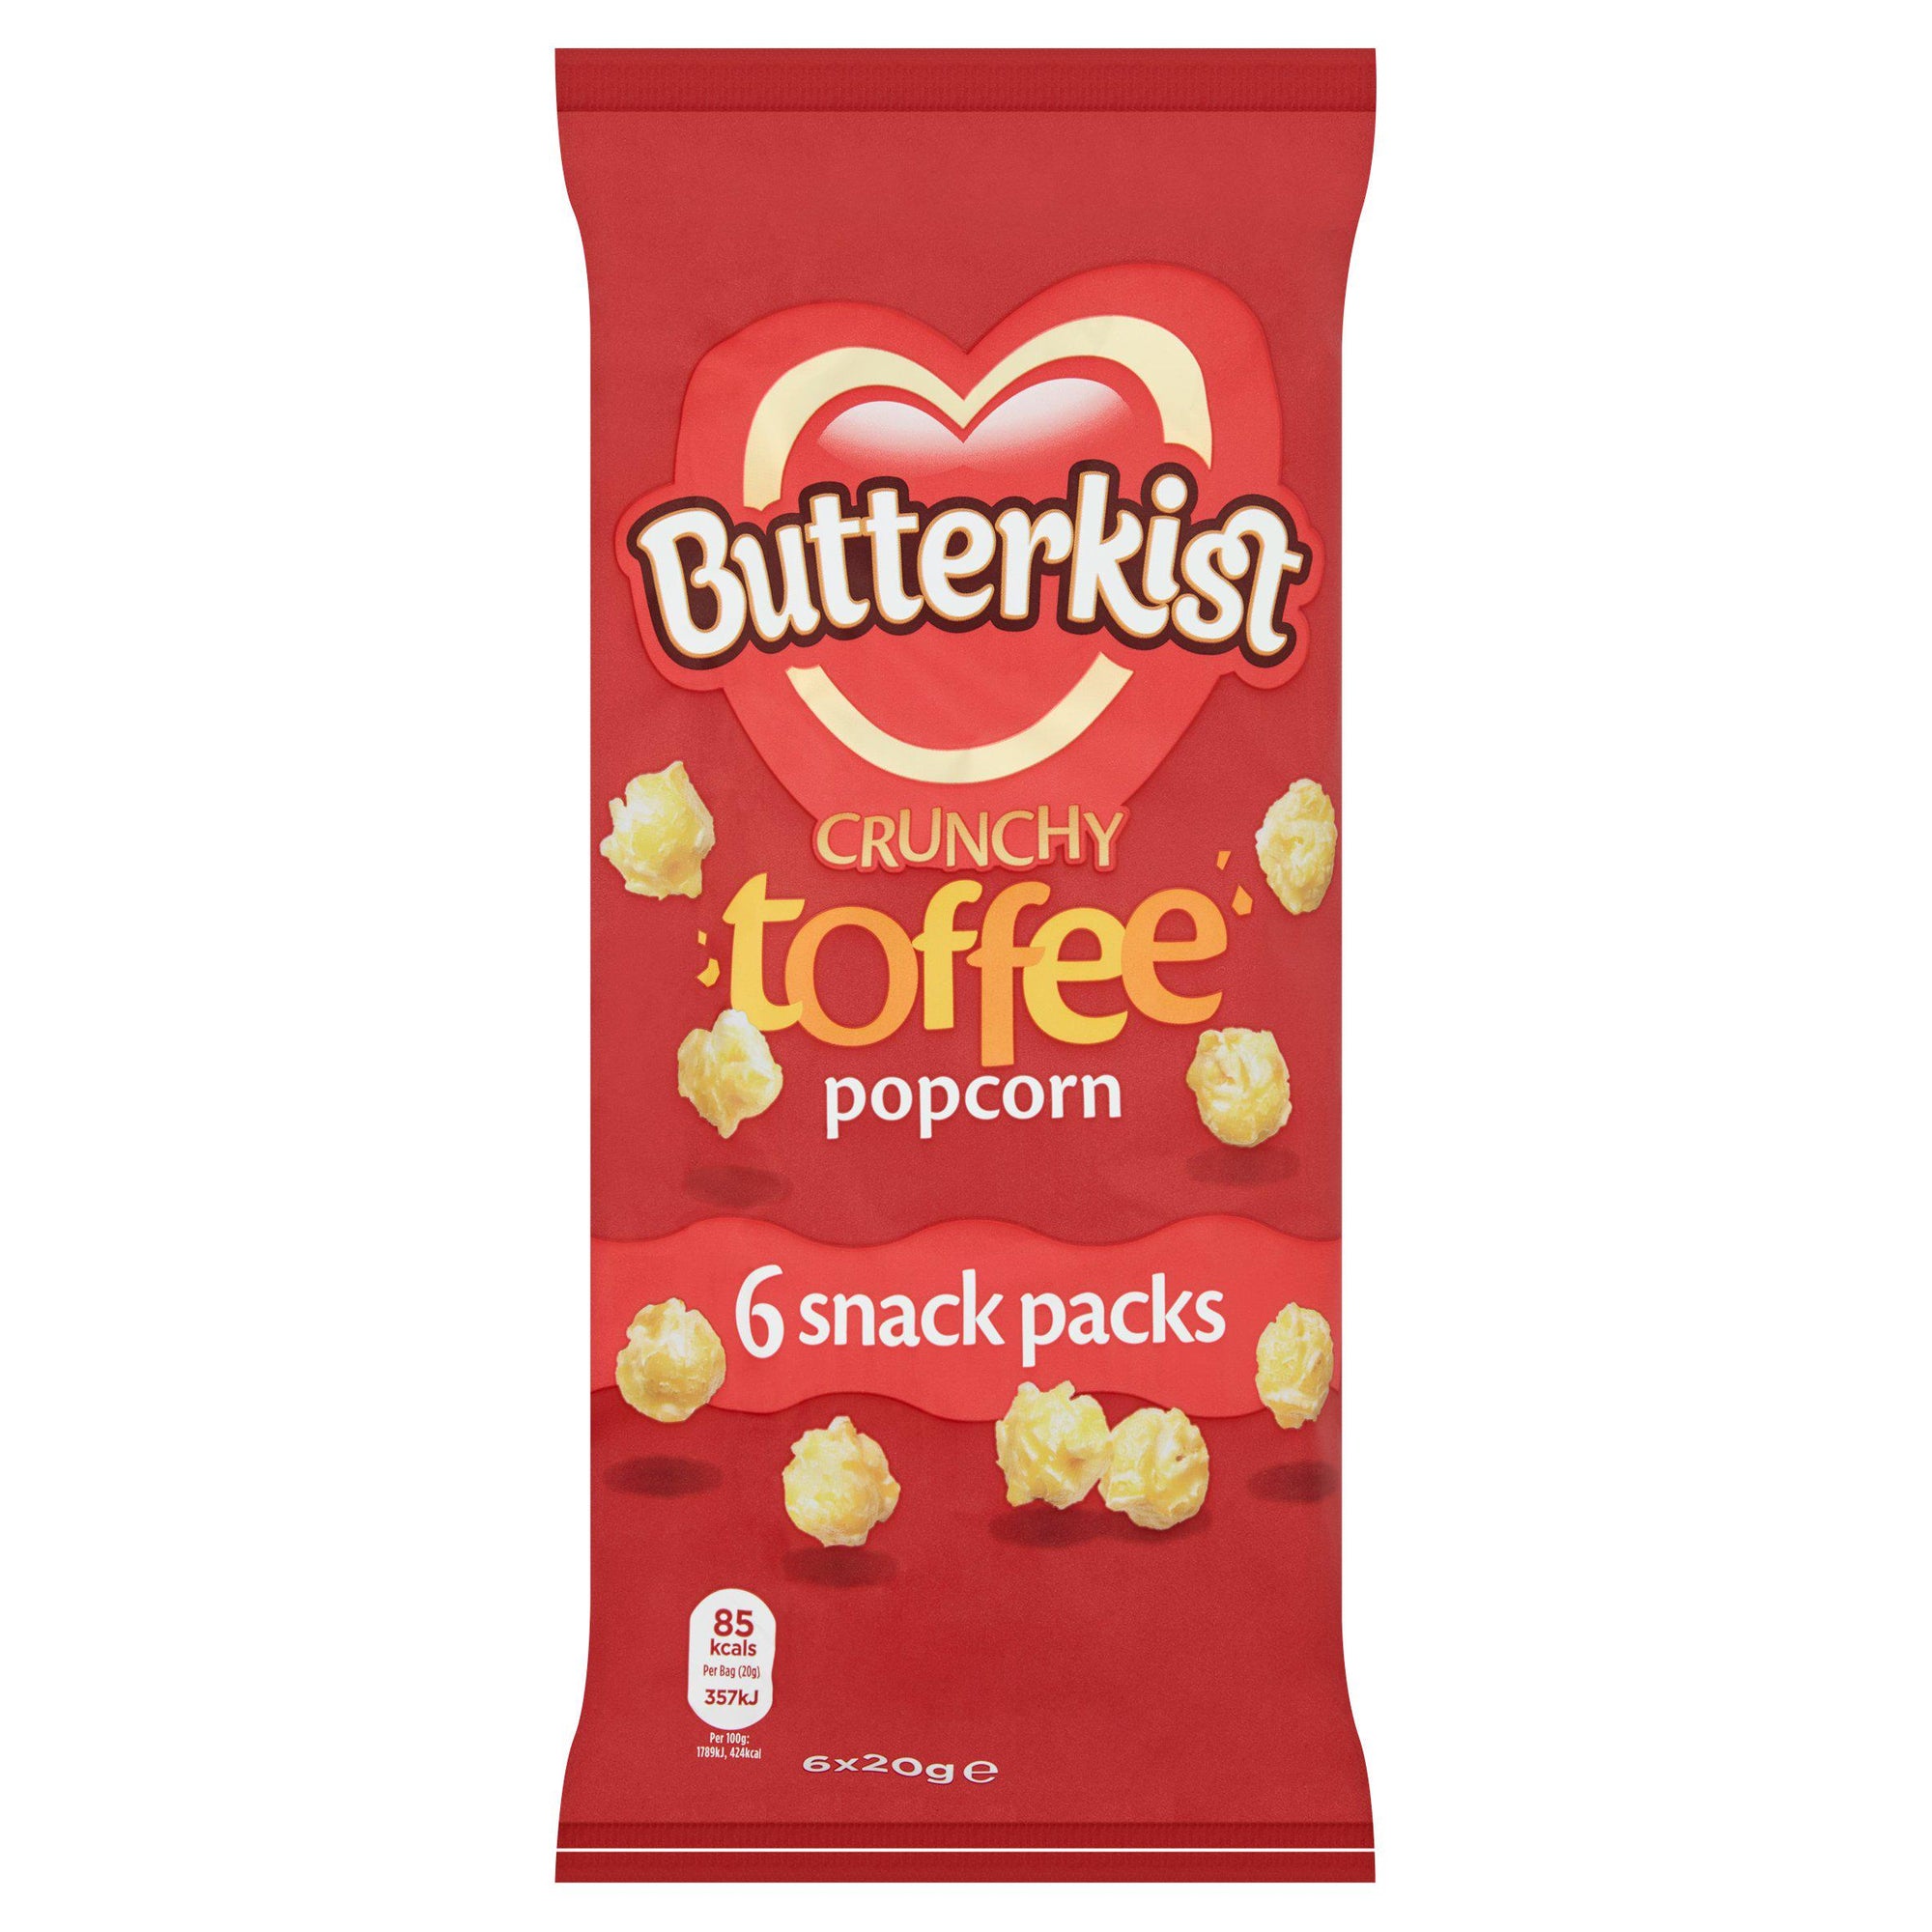 Butterkist Crunchy Toffee Popcorn (6x20g)*